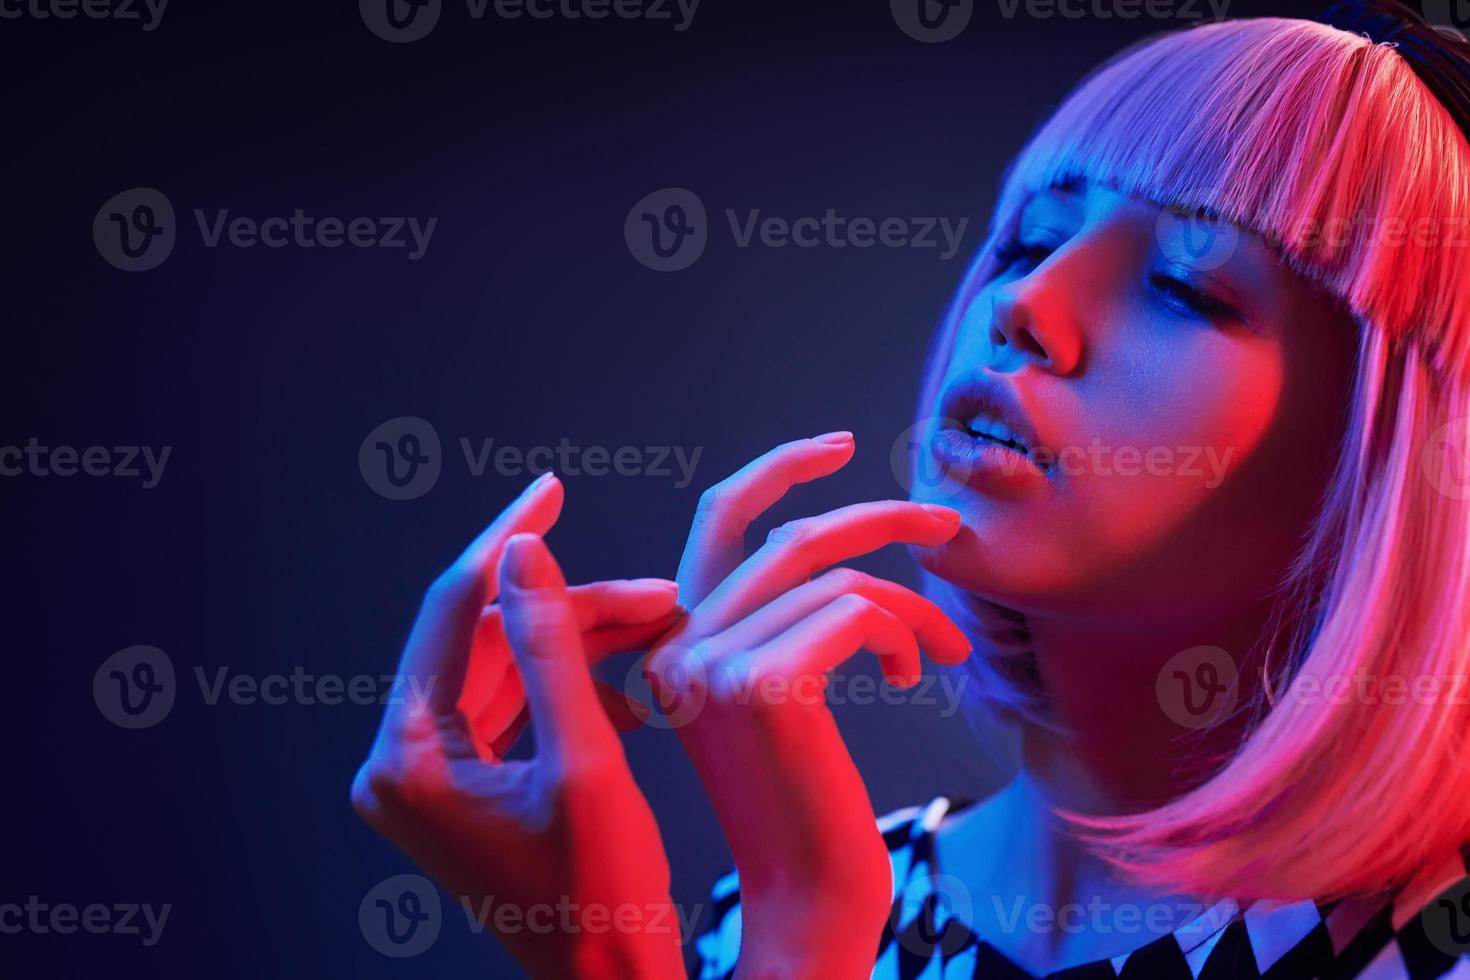 retrato de jovem com cabelo loiro em néon vermelho e azul no estúdio foto